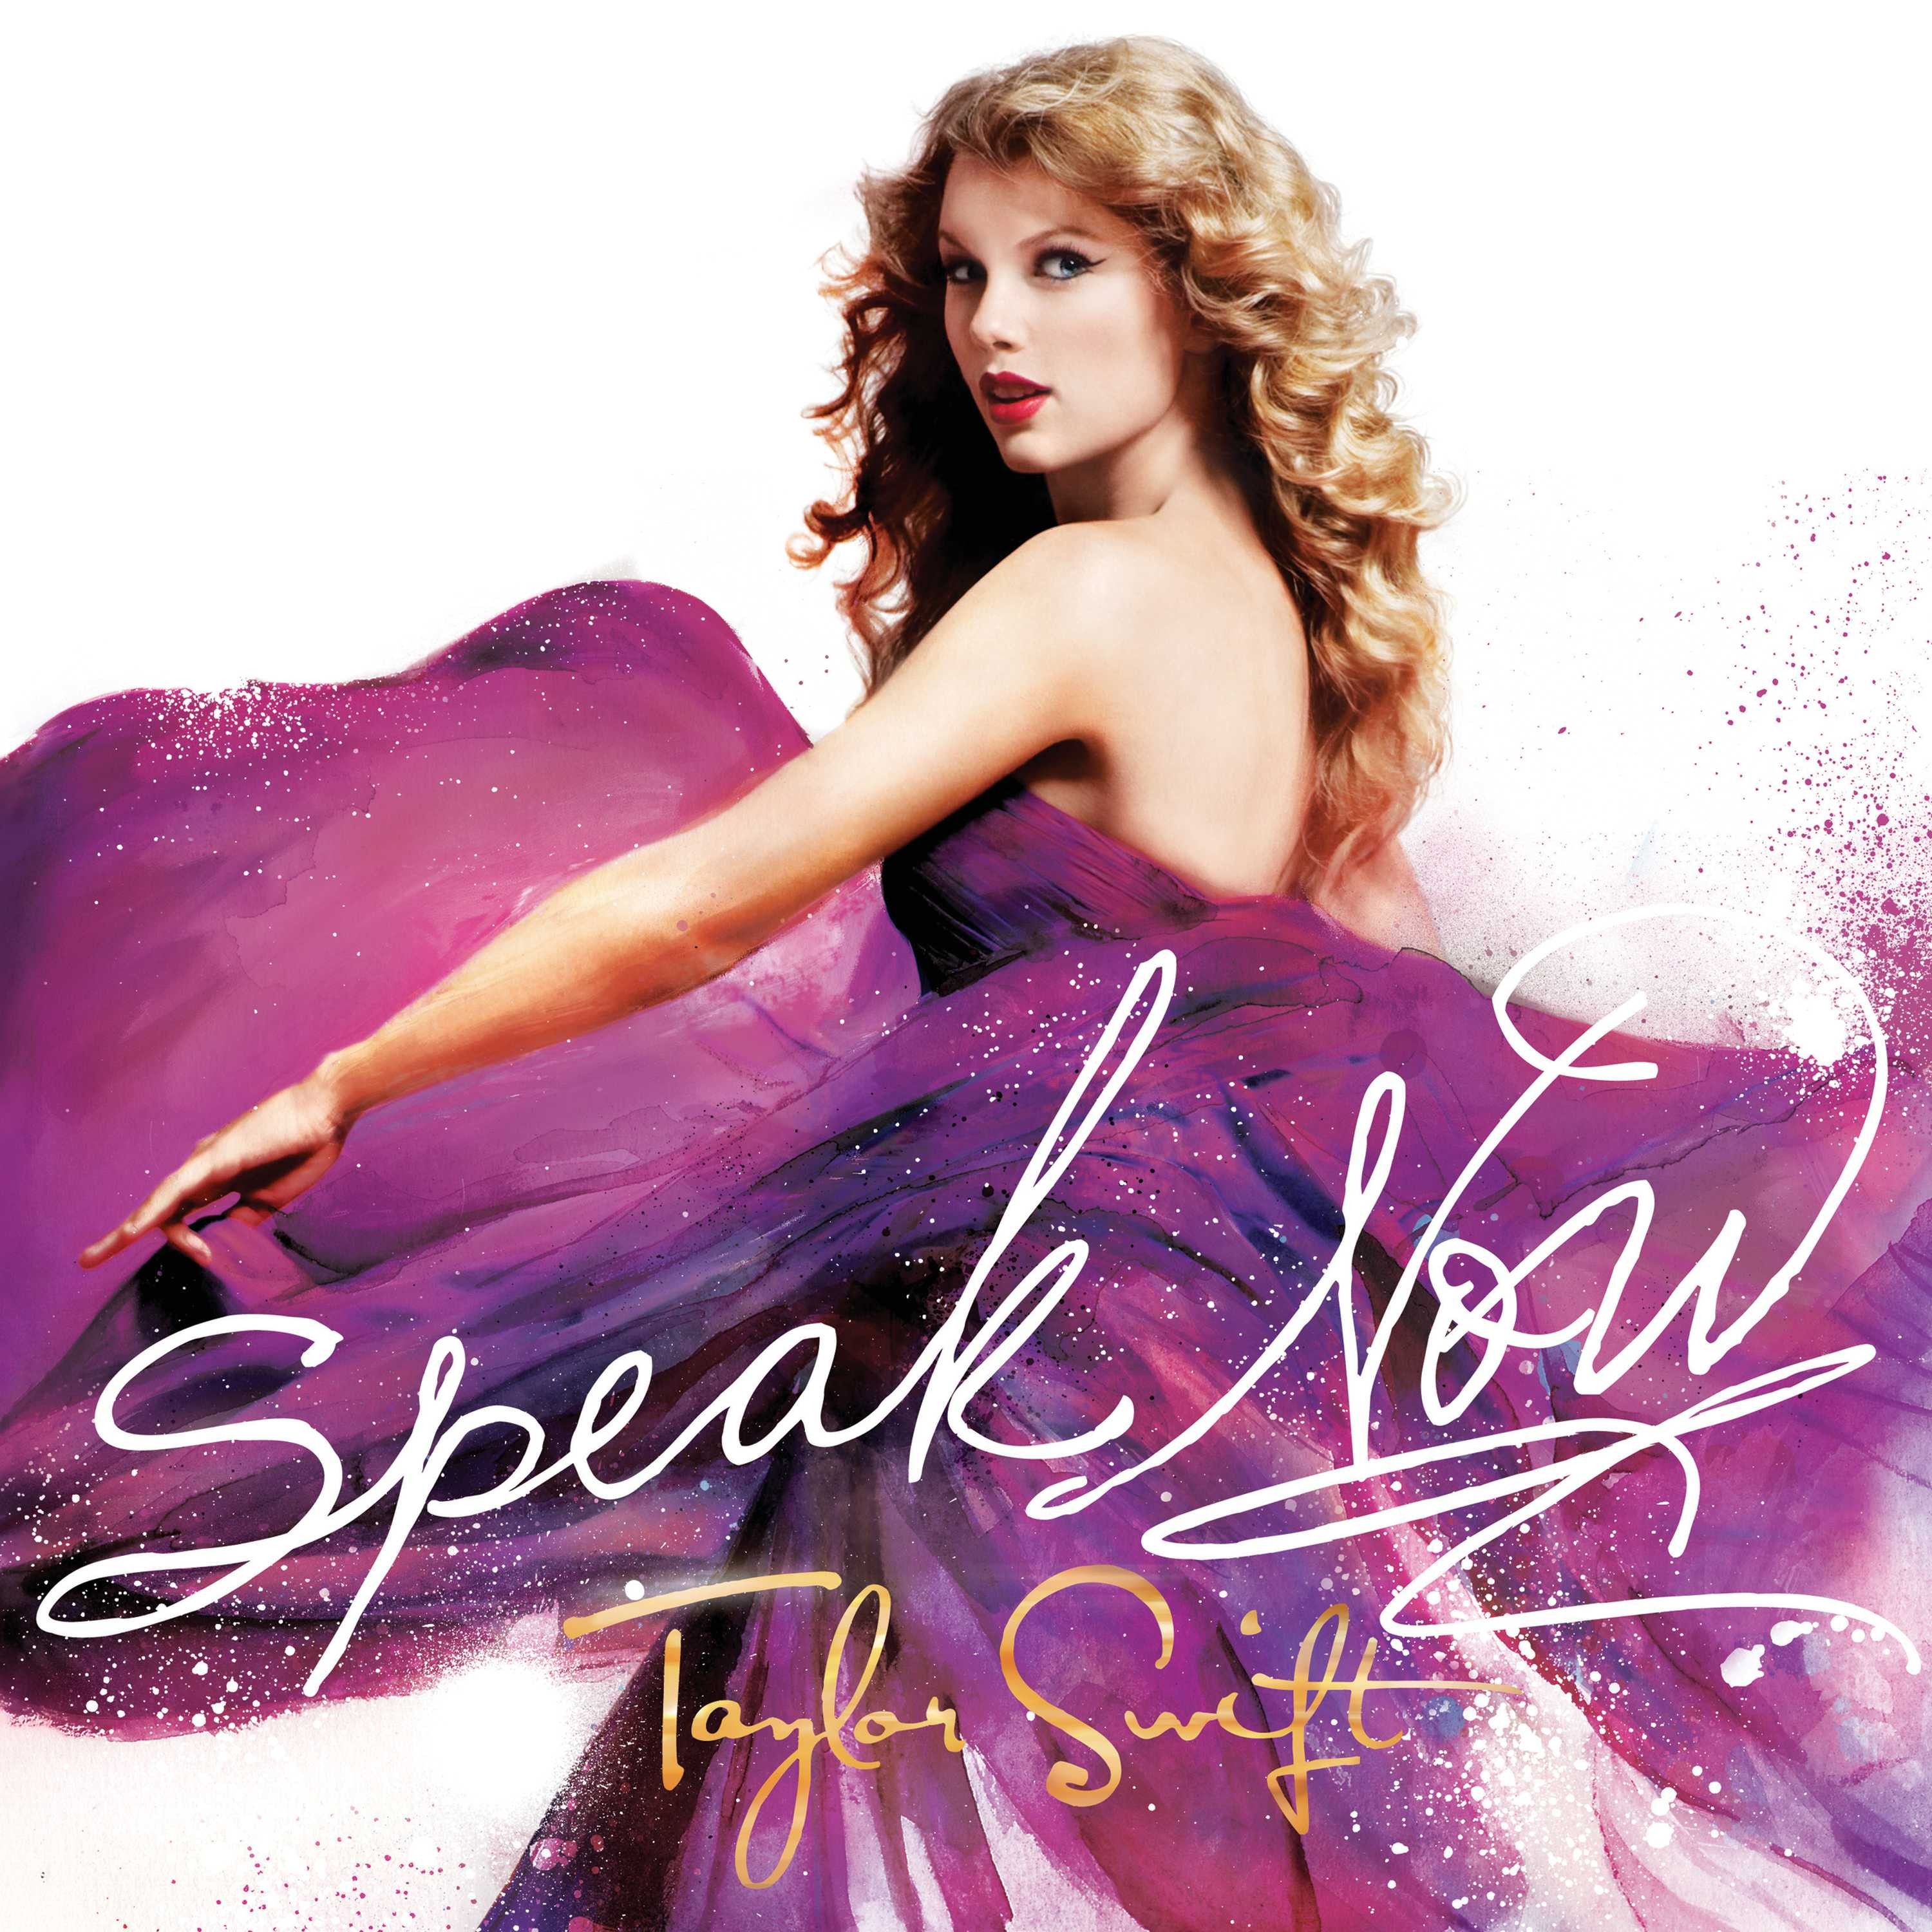 Taylor Swift — Better Than Revenge cover artwork